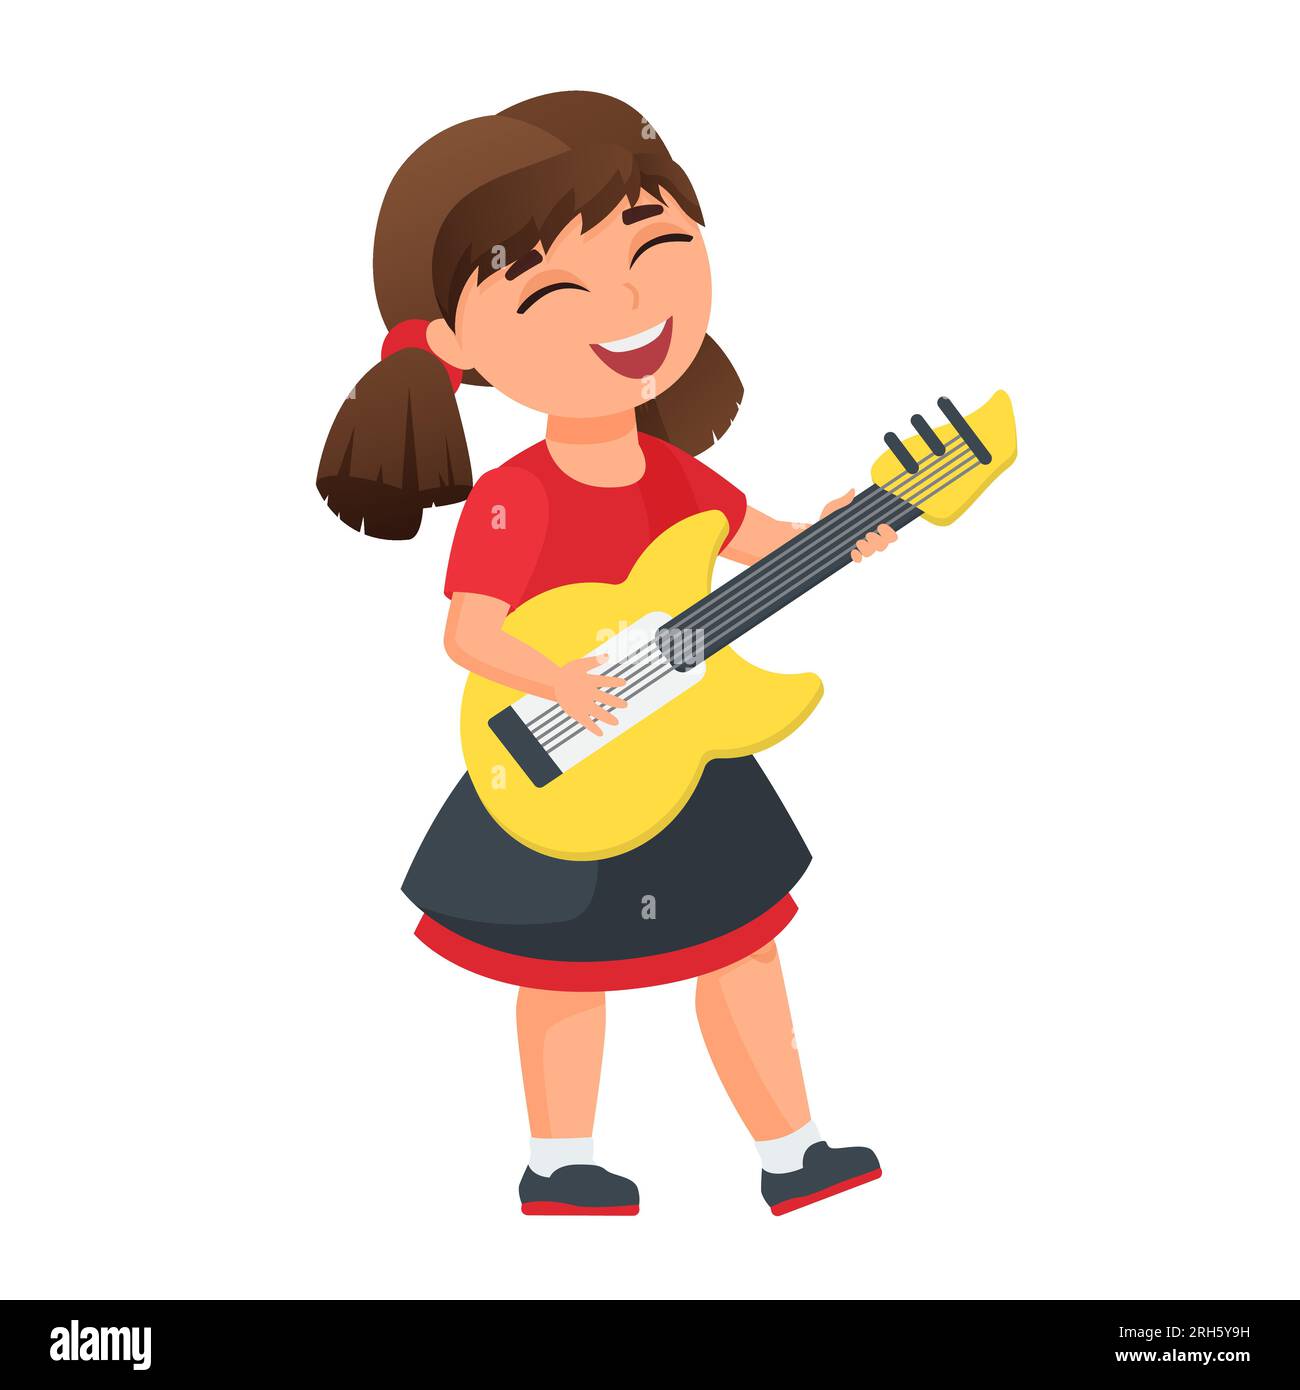 Kleines Mädchen, das Gitarre spielt. Kinder mit Musikinstrumenten, musikalische Darbietung von Vektorgrafiken Stock Vektor